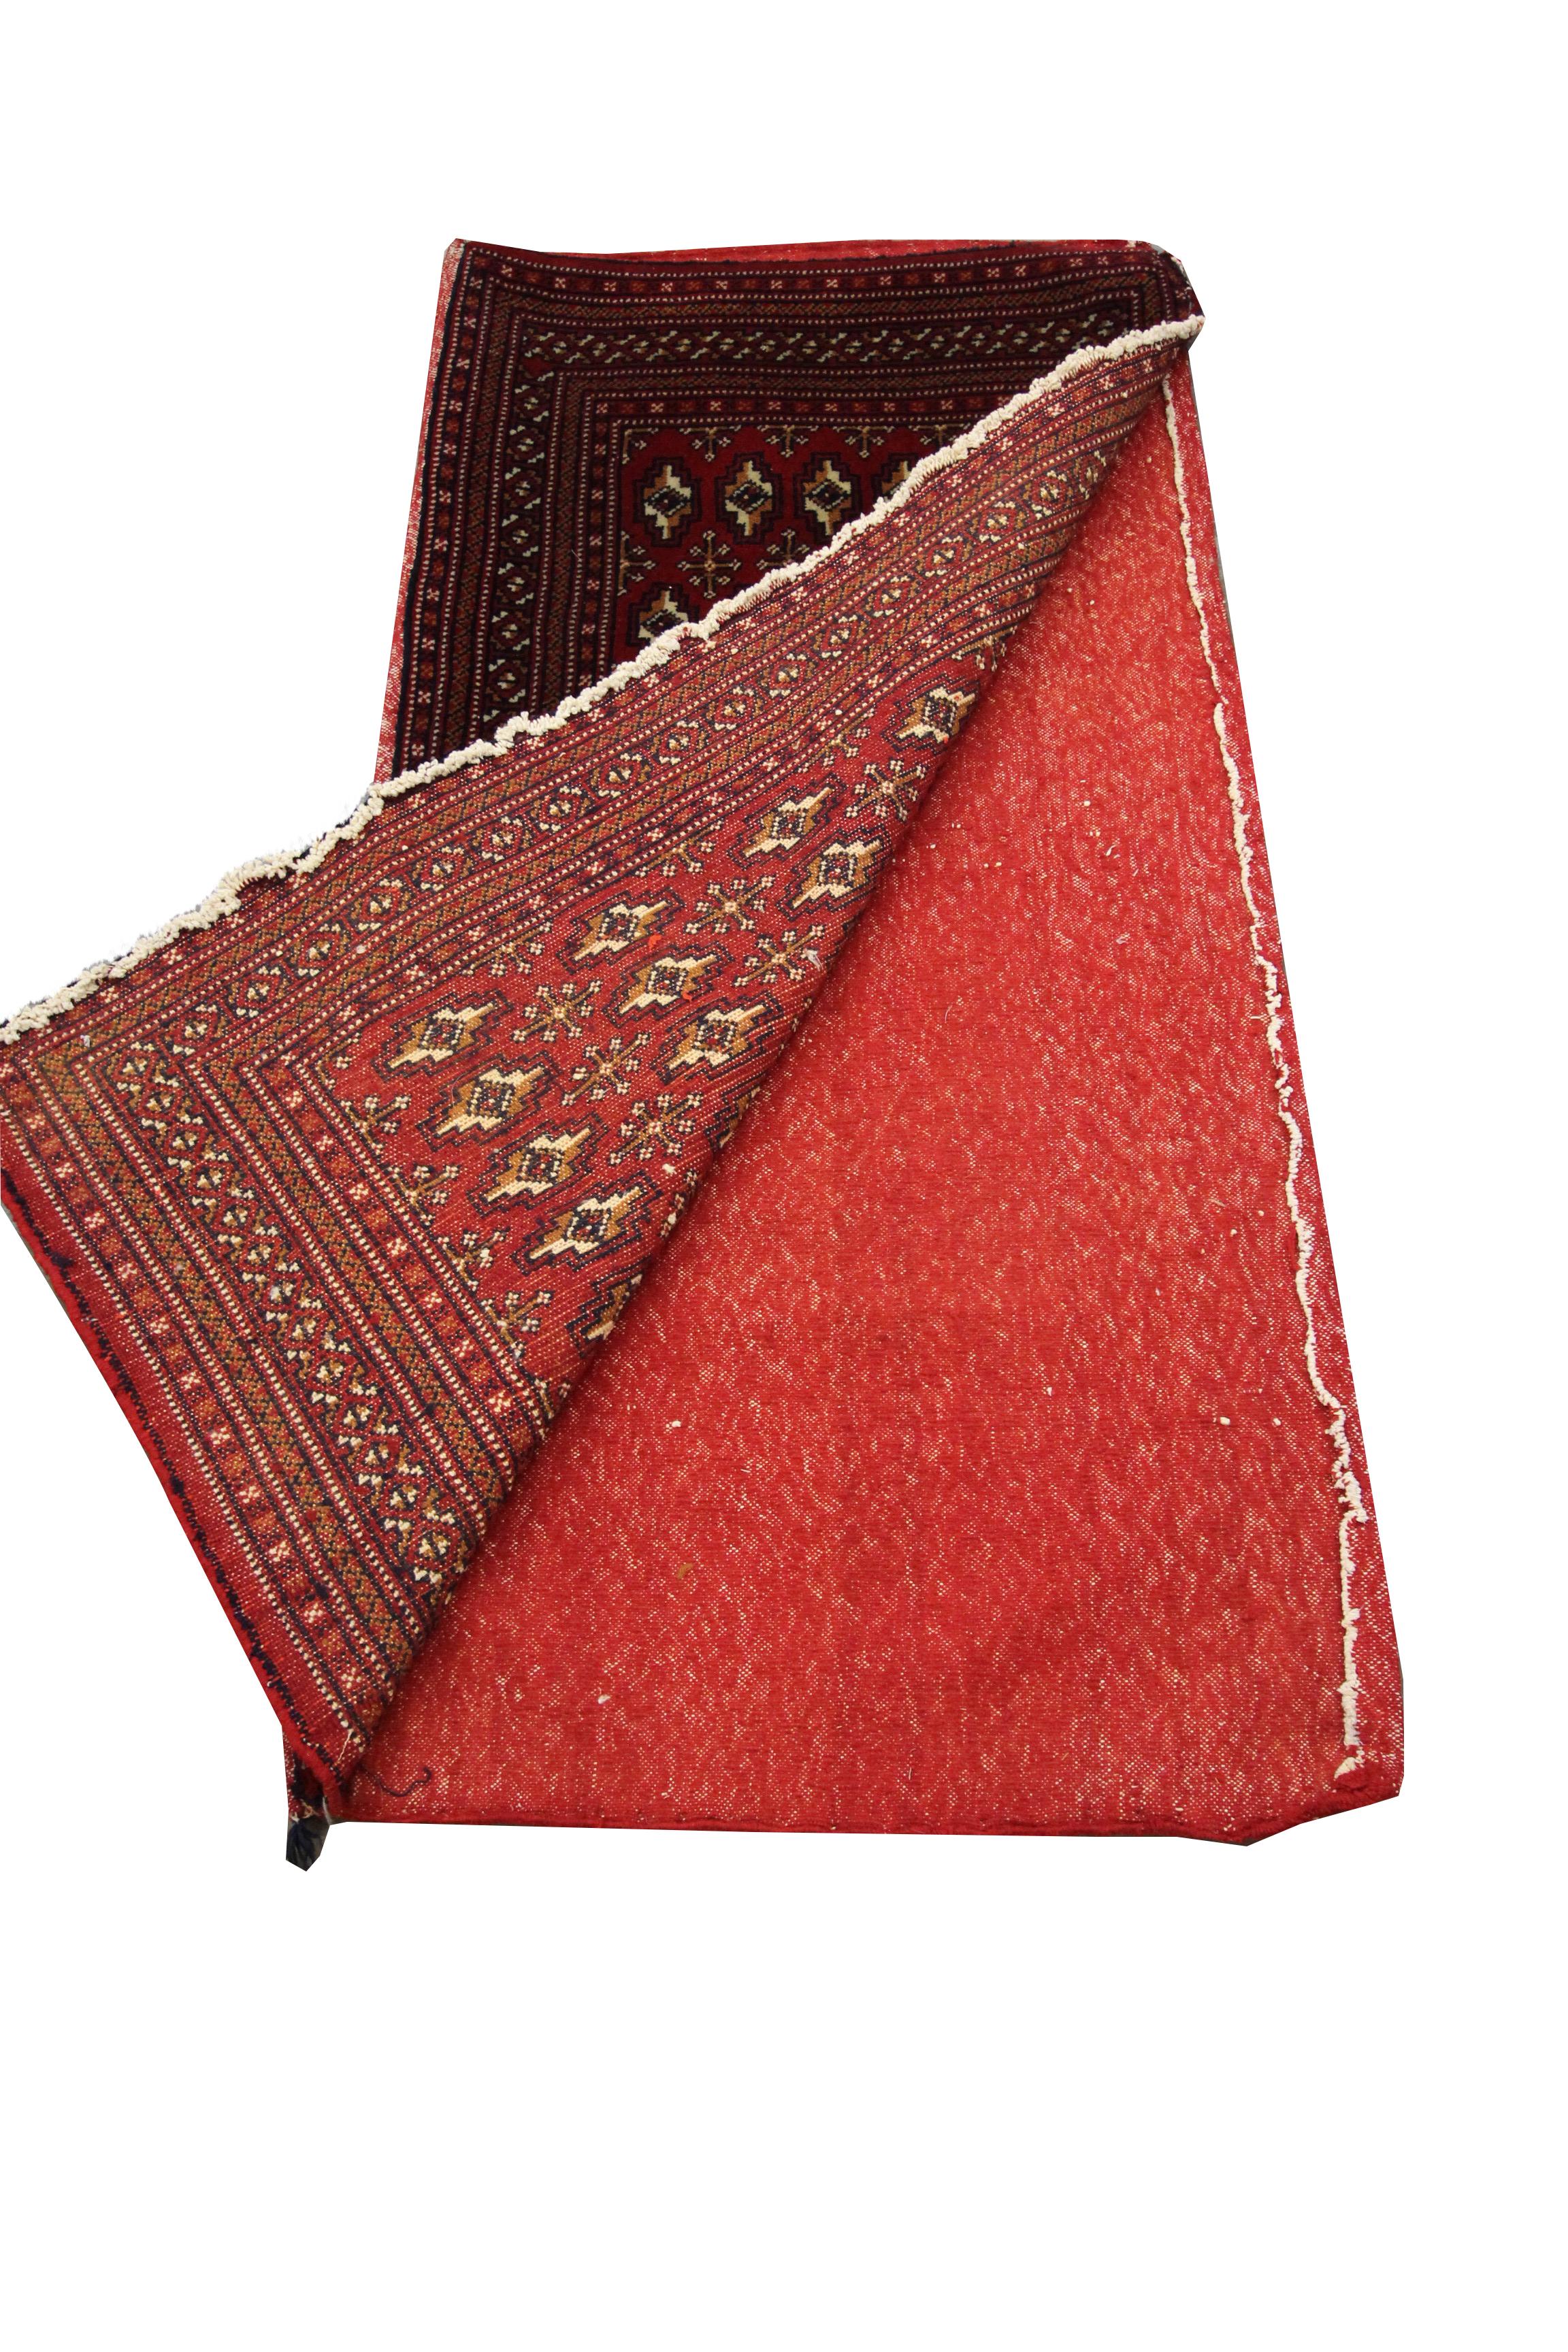 Wool Living Room Area Rug Handmade Turkman Carpet Red Poshti Rug For Sale 4